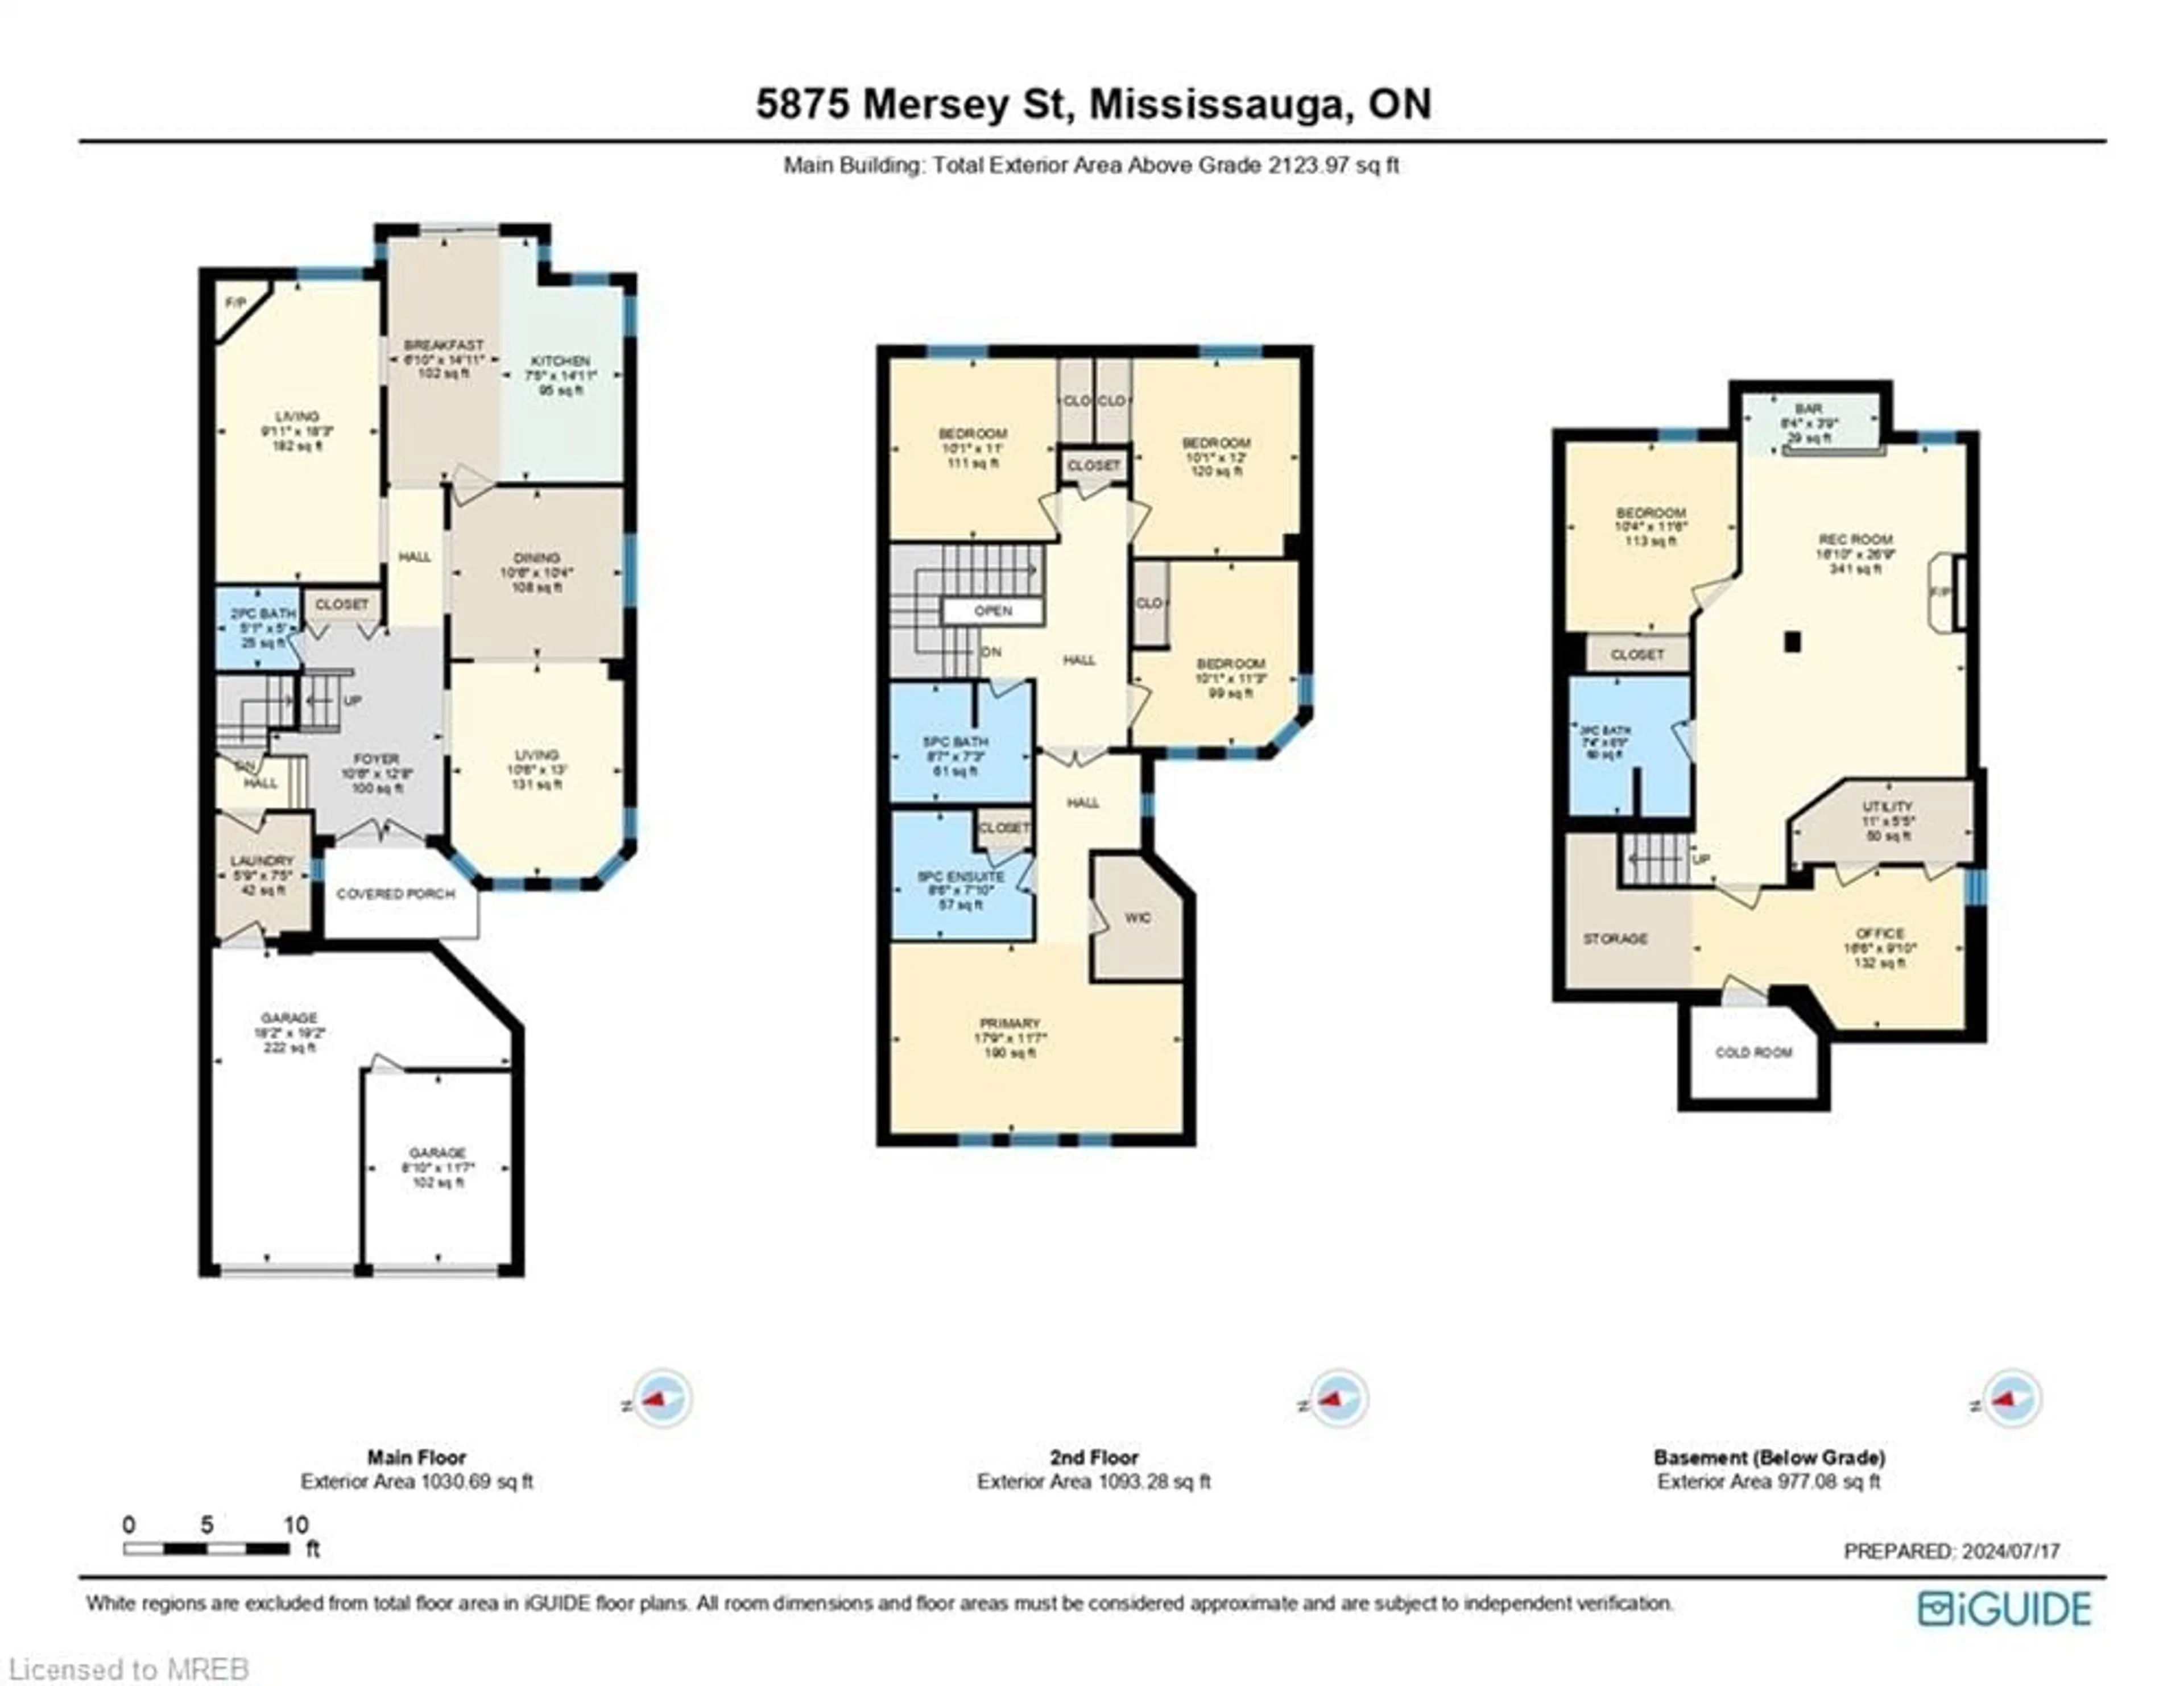 Floor plan for 5875 Mersey St, Mississauga Ontario L5V 1V9